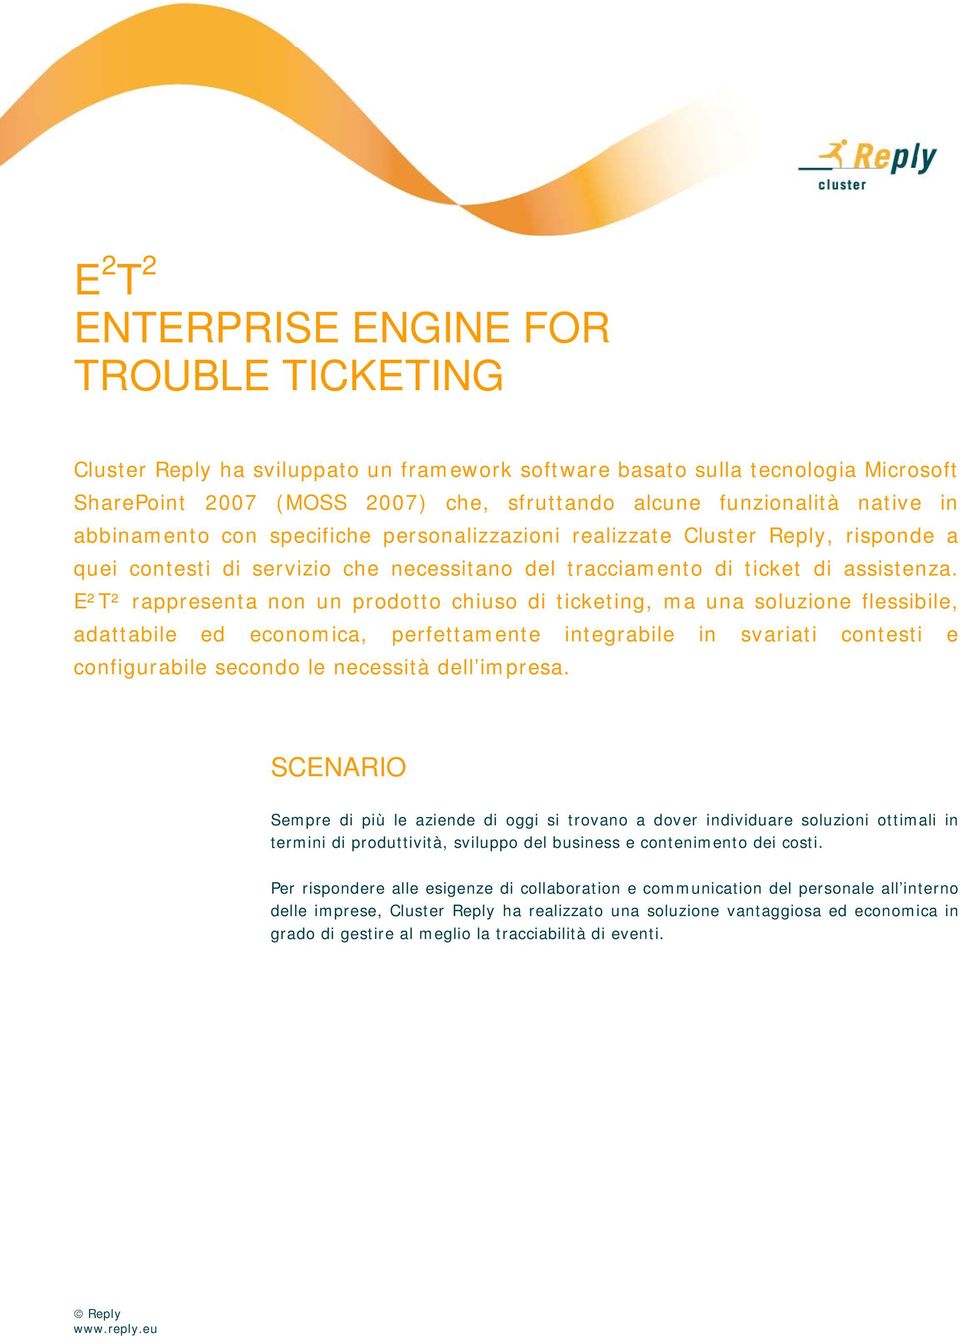 E²T² rappresenta non un prodotto chiuso di ticketing, ma una soluzione flessibile, adattabile ed economica, perfettamente integrabile in svariati contesti e configurabile secondo le necessità dell